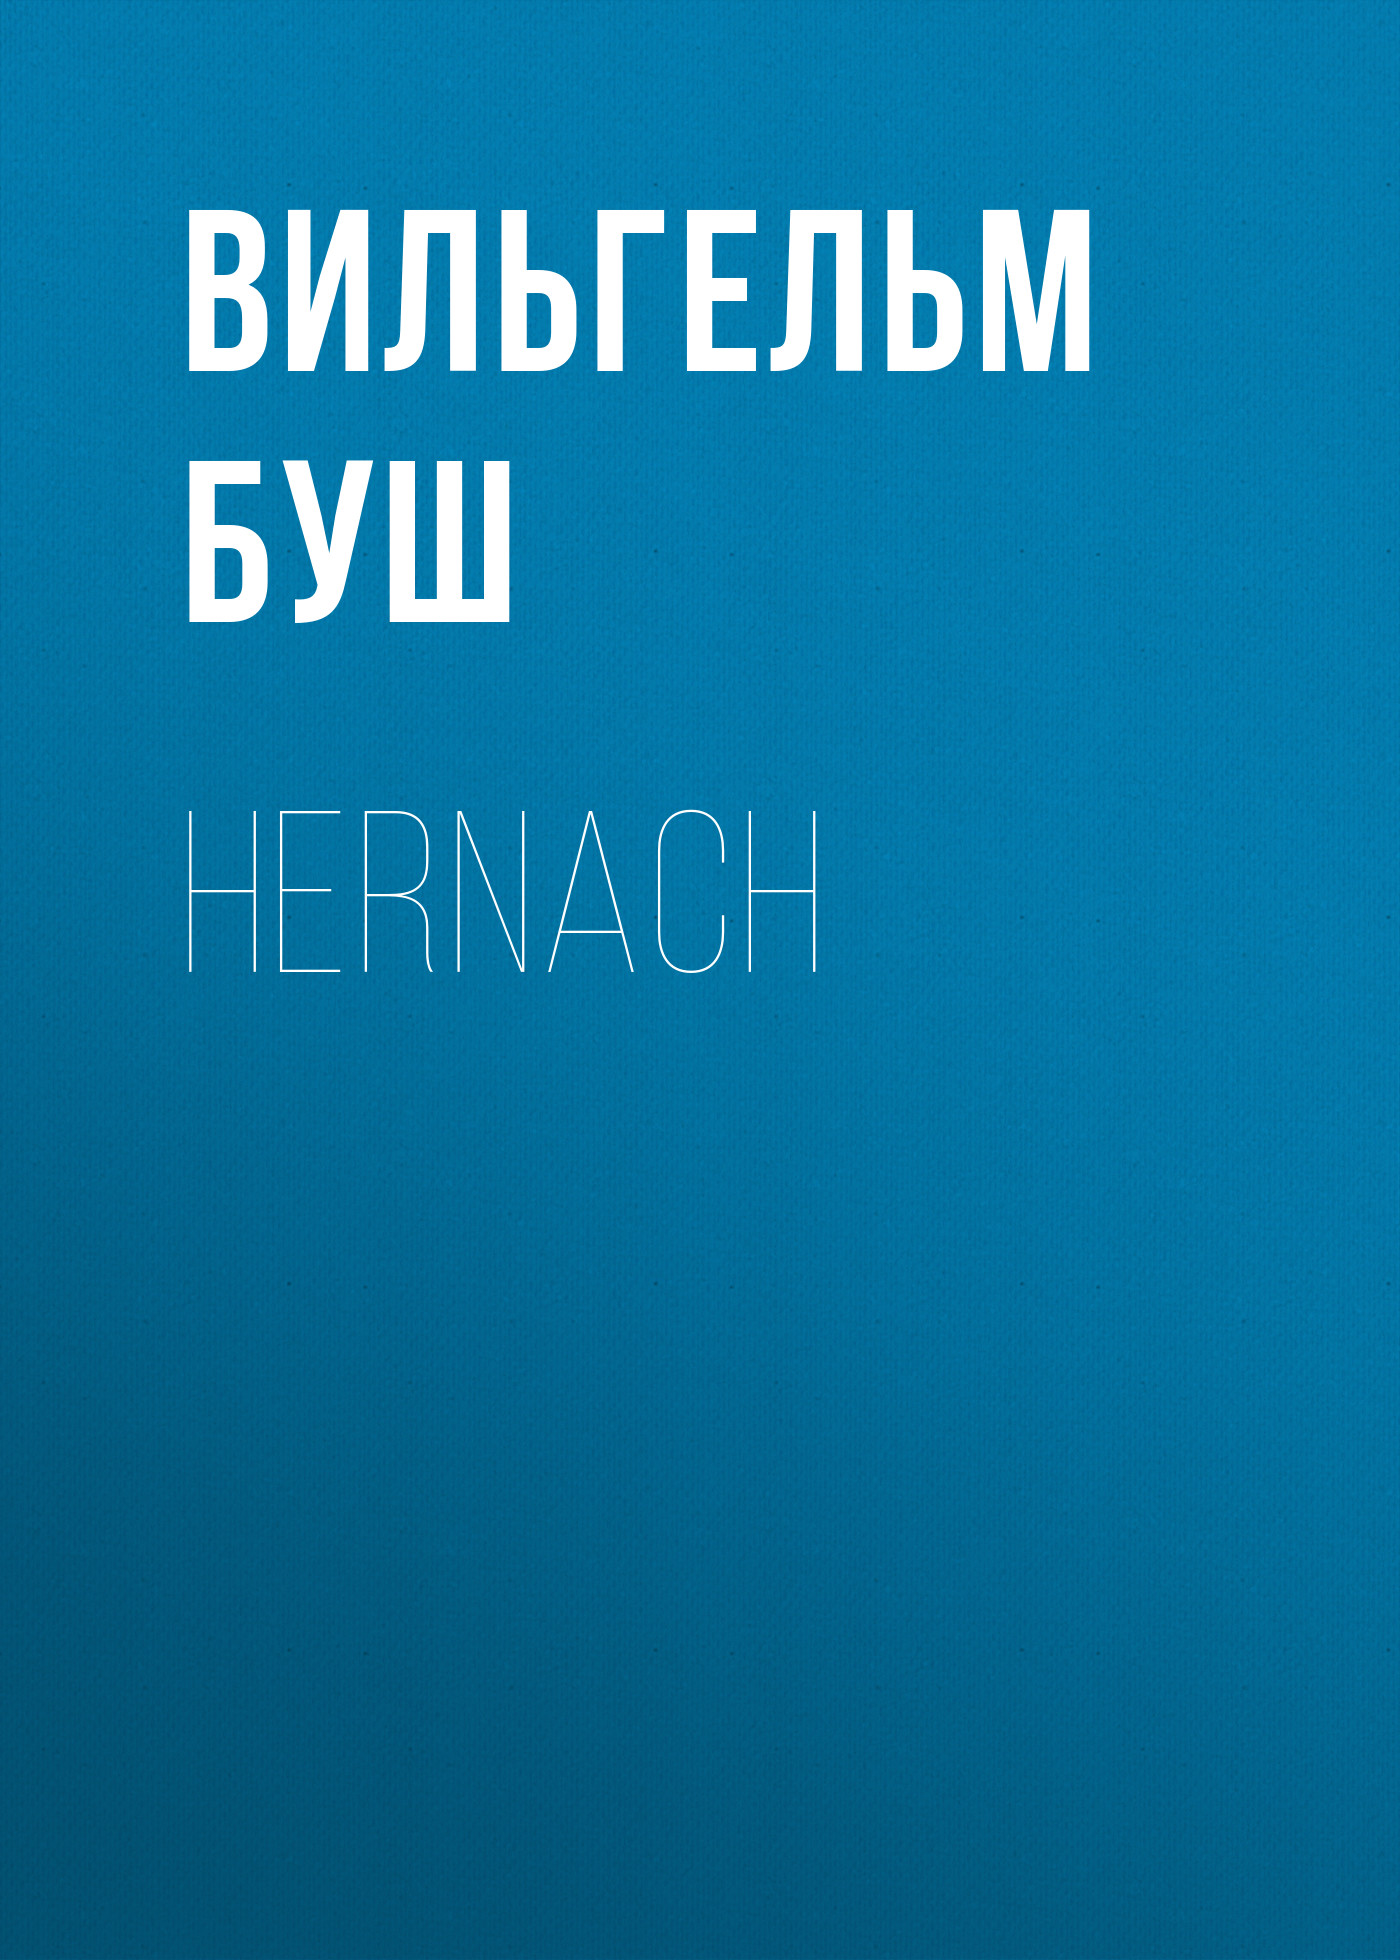 Книга Hernach из серии , созданная Вильгельм Буш, может относится к жанру Зарубежная классика, Зарубежная старинная литература. Стоимость электронной книги Hernach с идентификатором 34843086 составляет 0 руб.